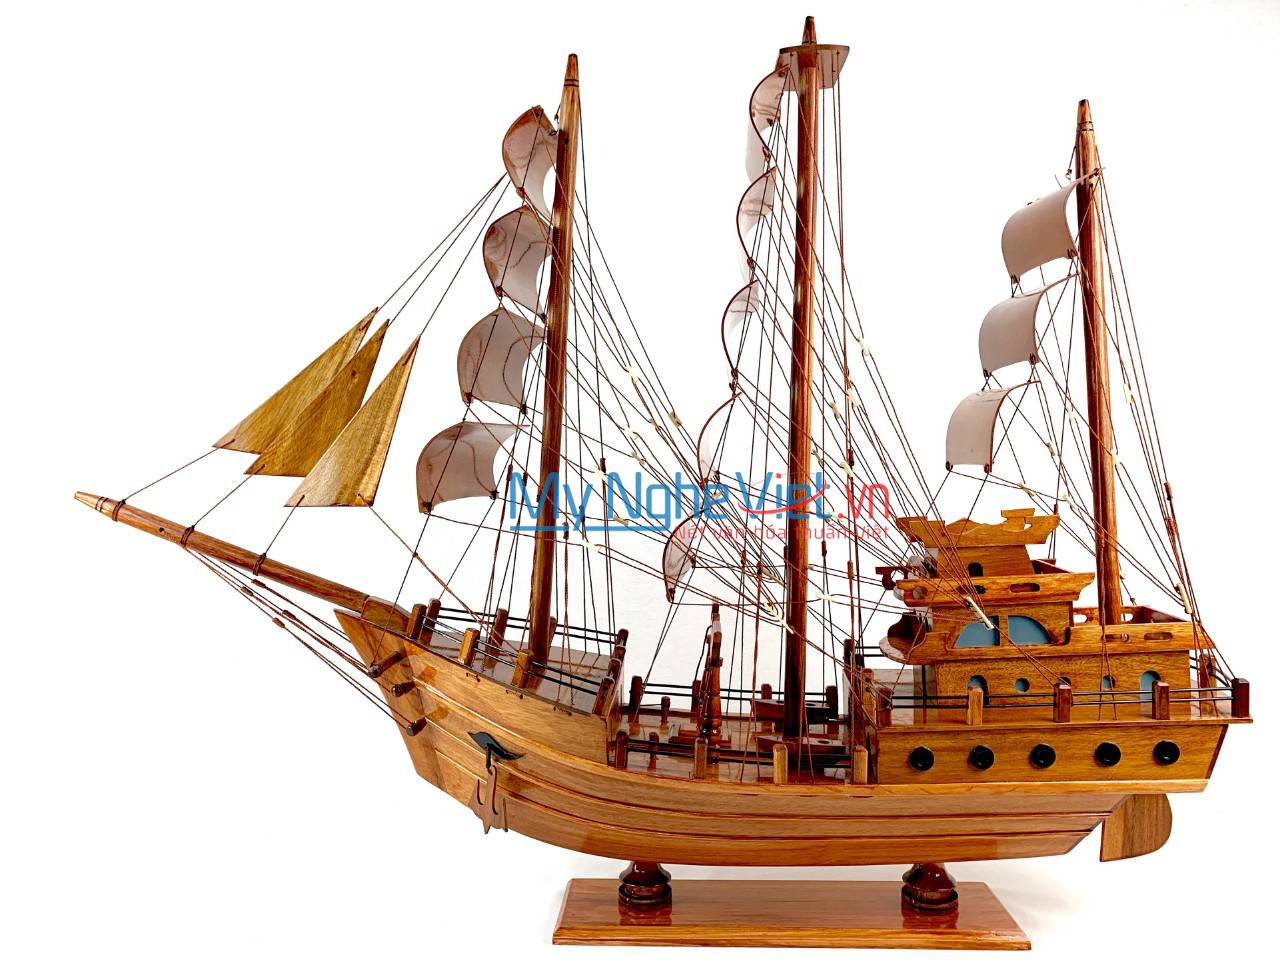 Mô Hình Tàu Thuyền Thái Lan gỗ tràm (Thân 100cm) MNV-TB15/100